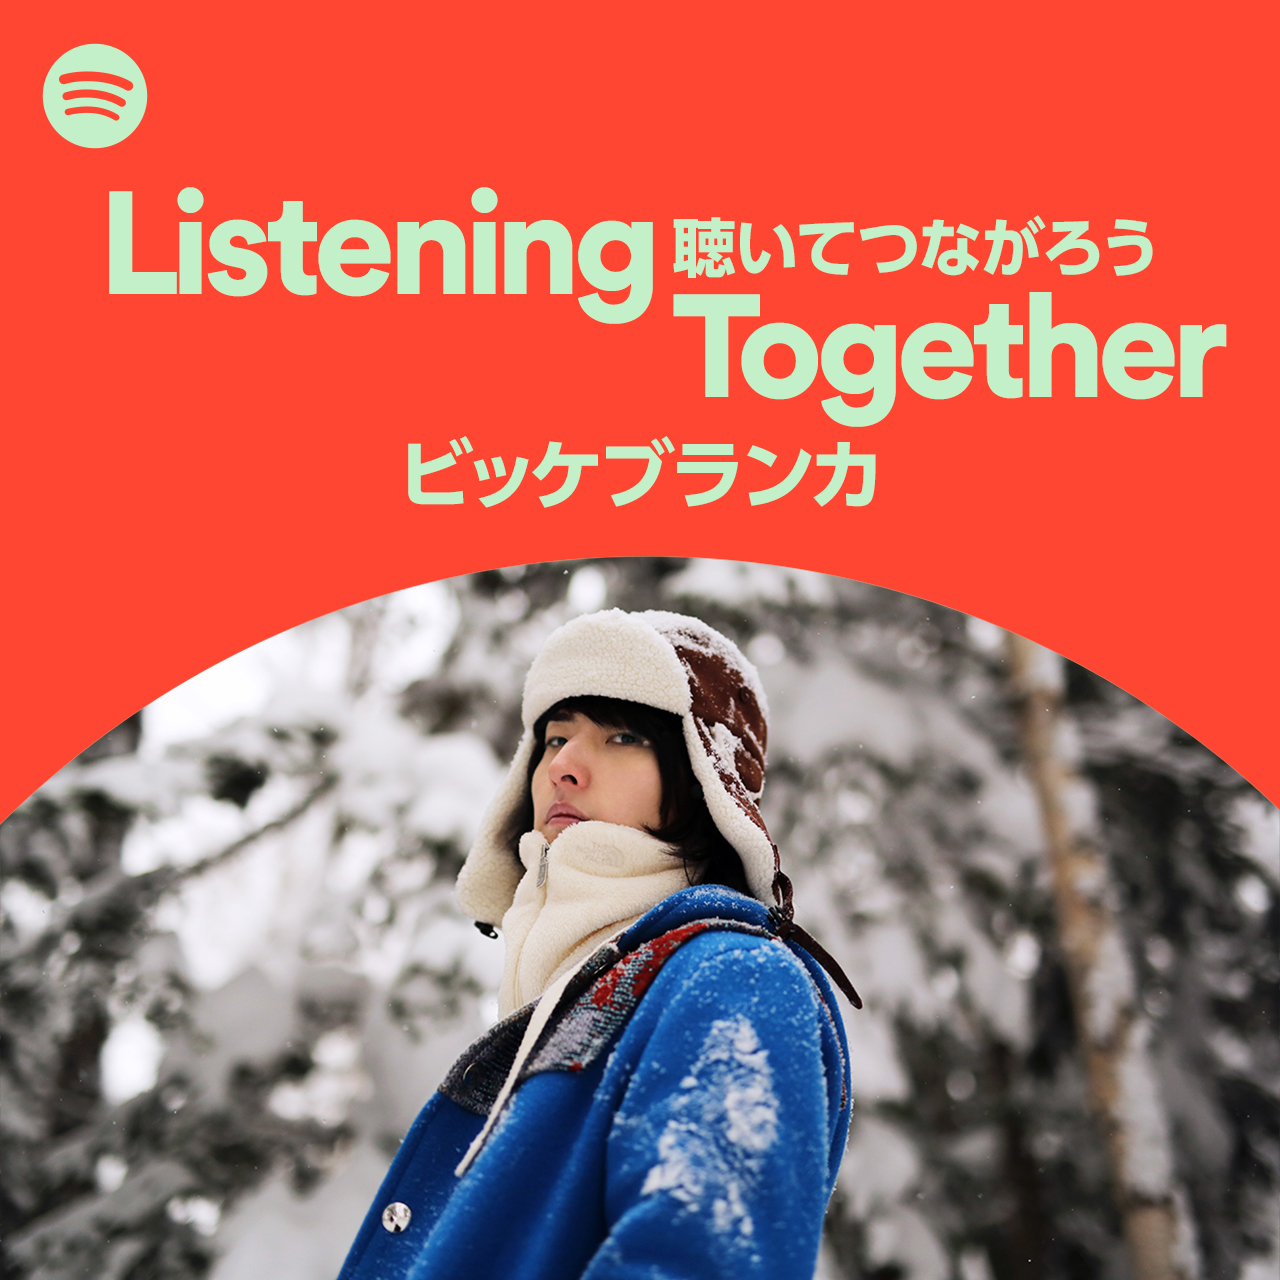 ビッケブランカ、Spotify新プレイリスト「Listening Together ＃聴いてつながろう」公開サムネイル画像!